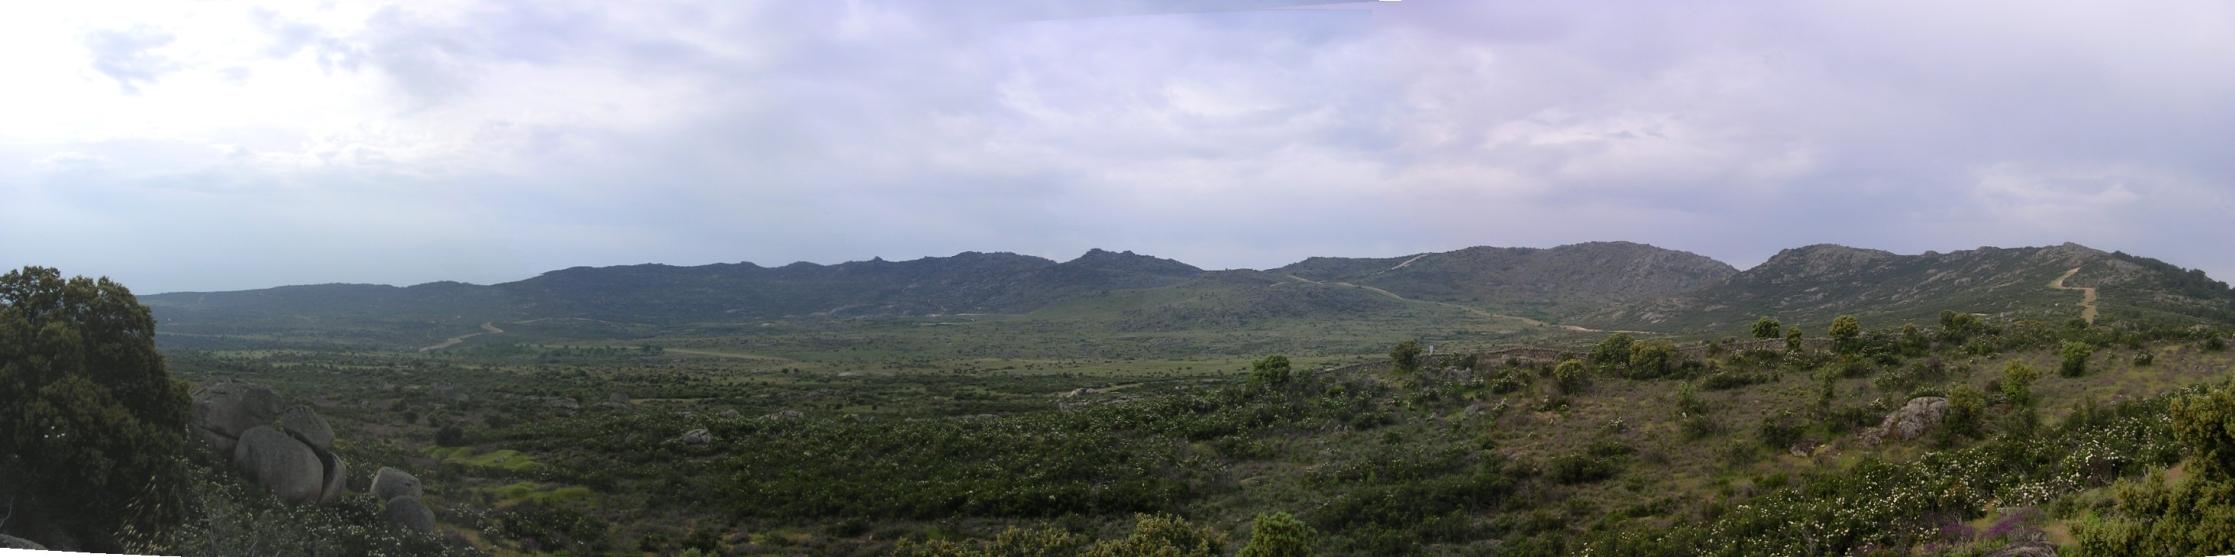  vista de la zona del Palancar y la sierra de Hoyo 